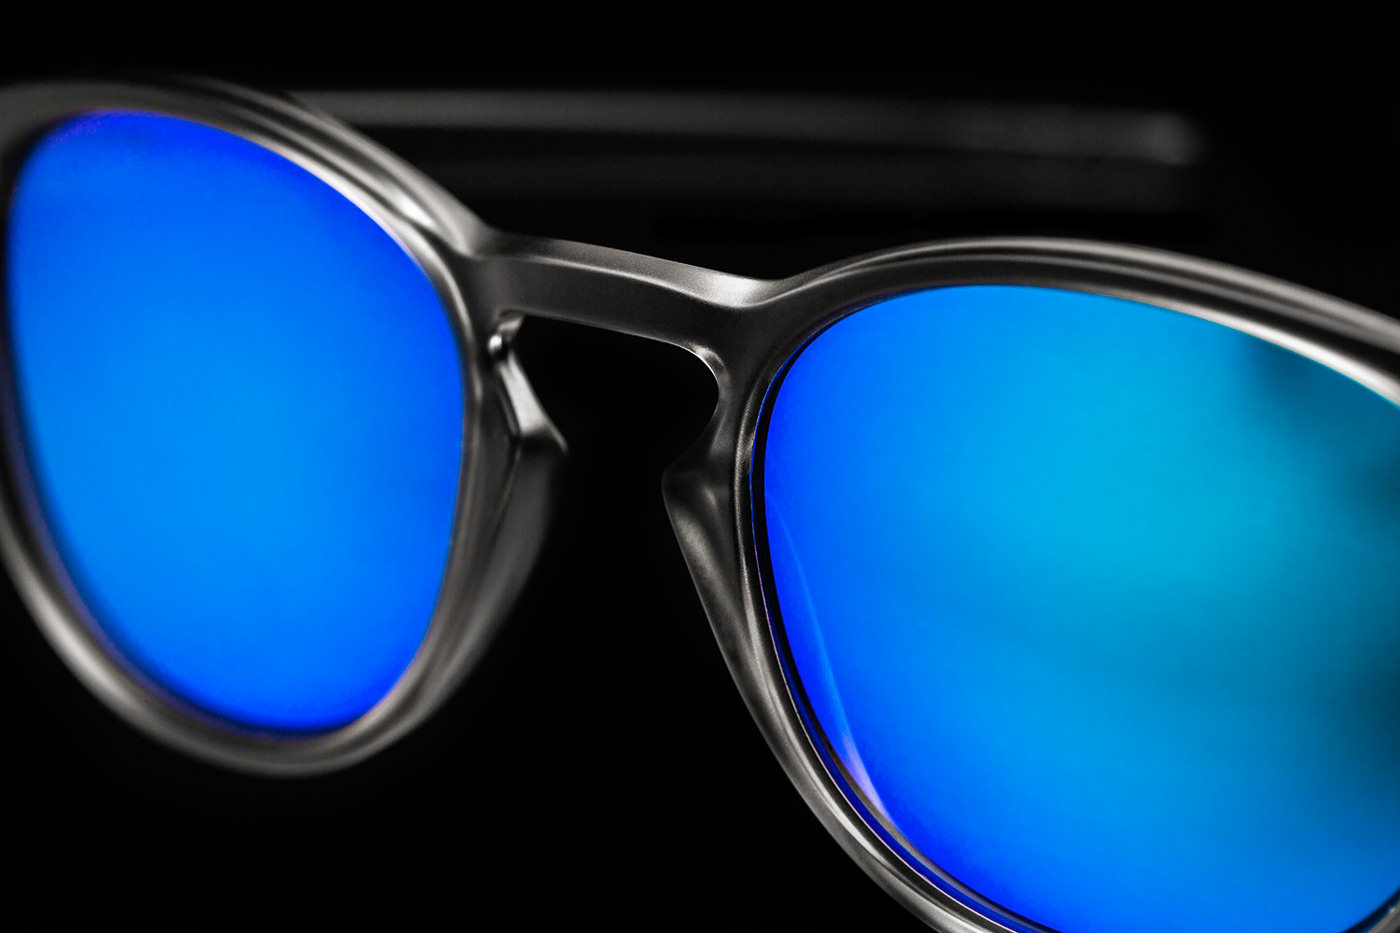 Close-up lunette Oakley teinte bleu sur noir